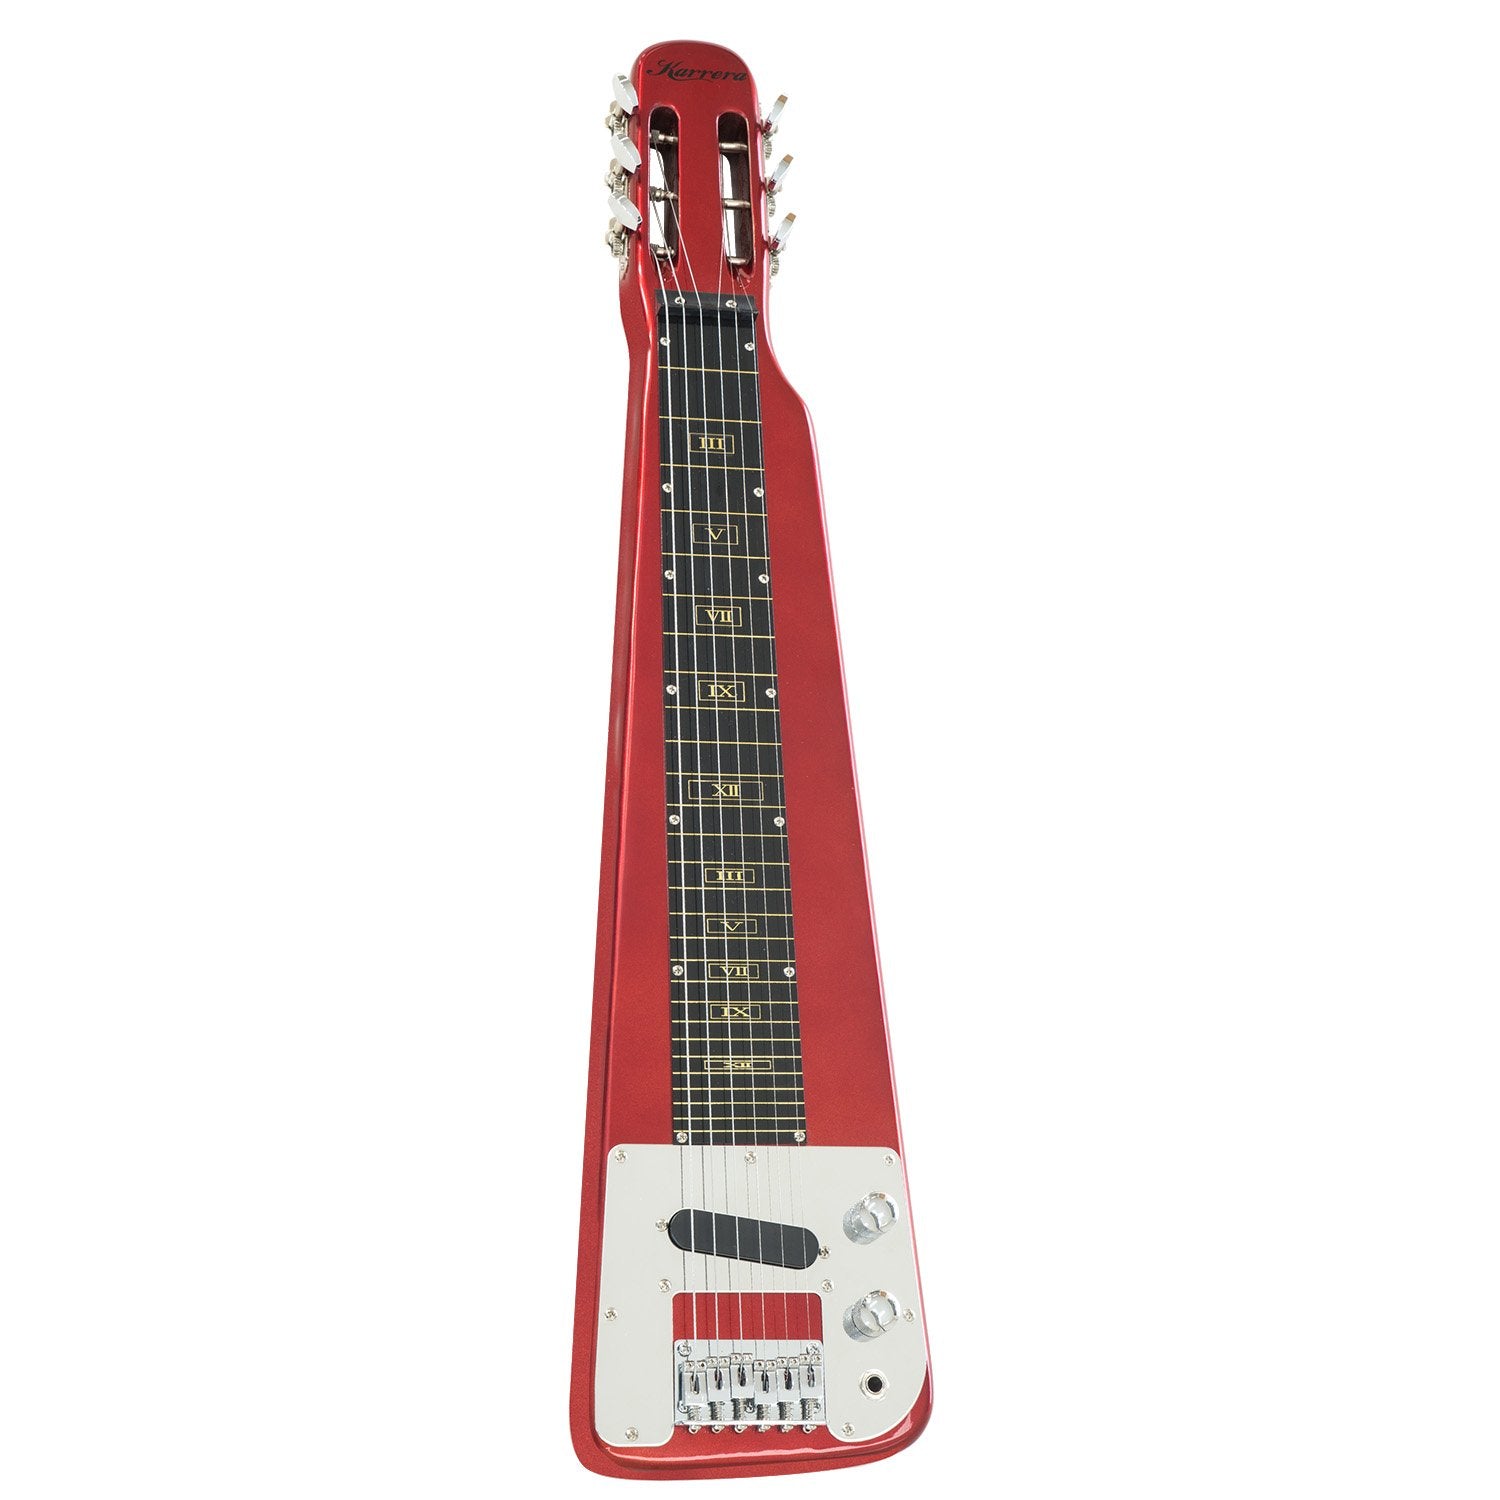 Metallic Red 6-String Lap Steel Guitar, Volume Controls - Karrera